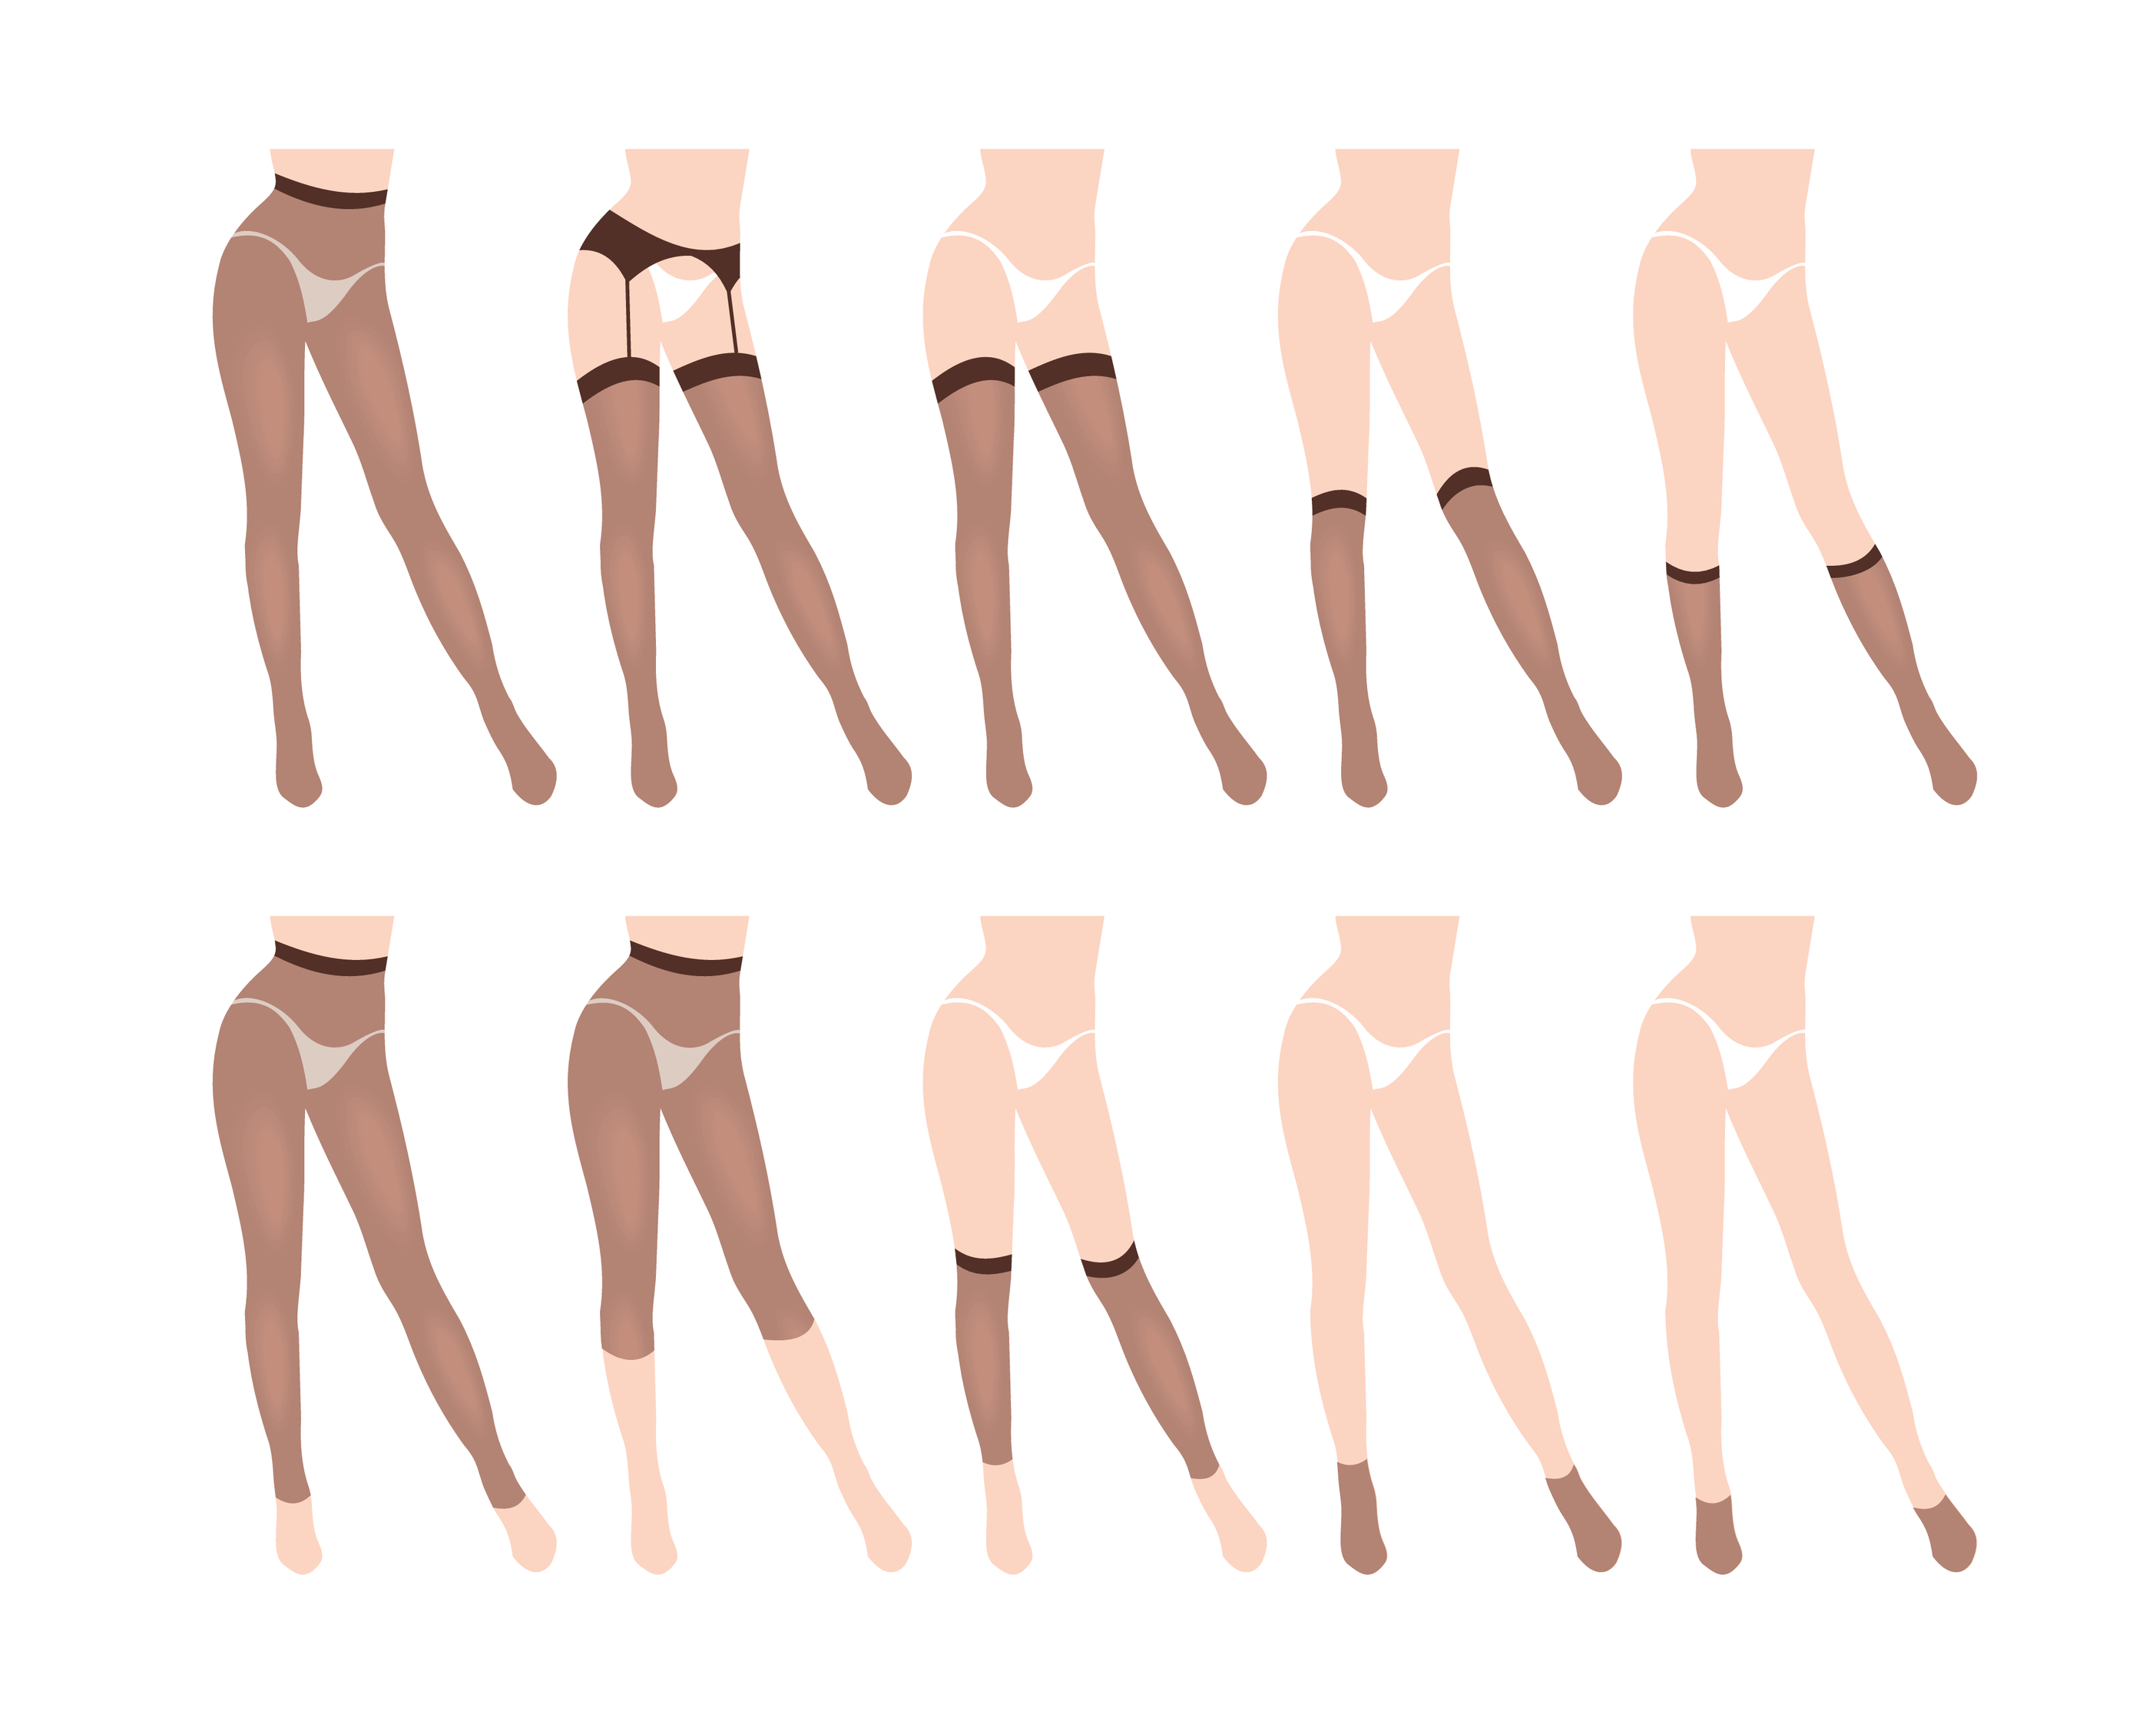 Group of women's legs wearing hosiery